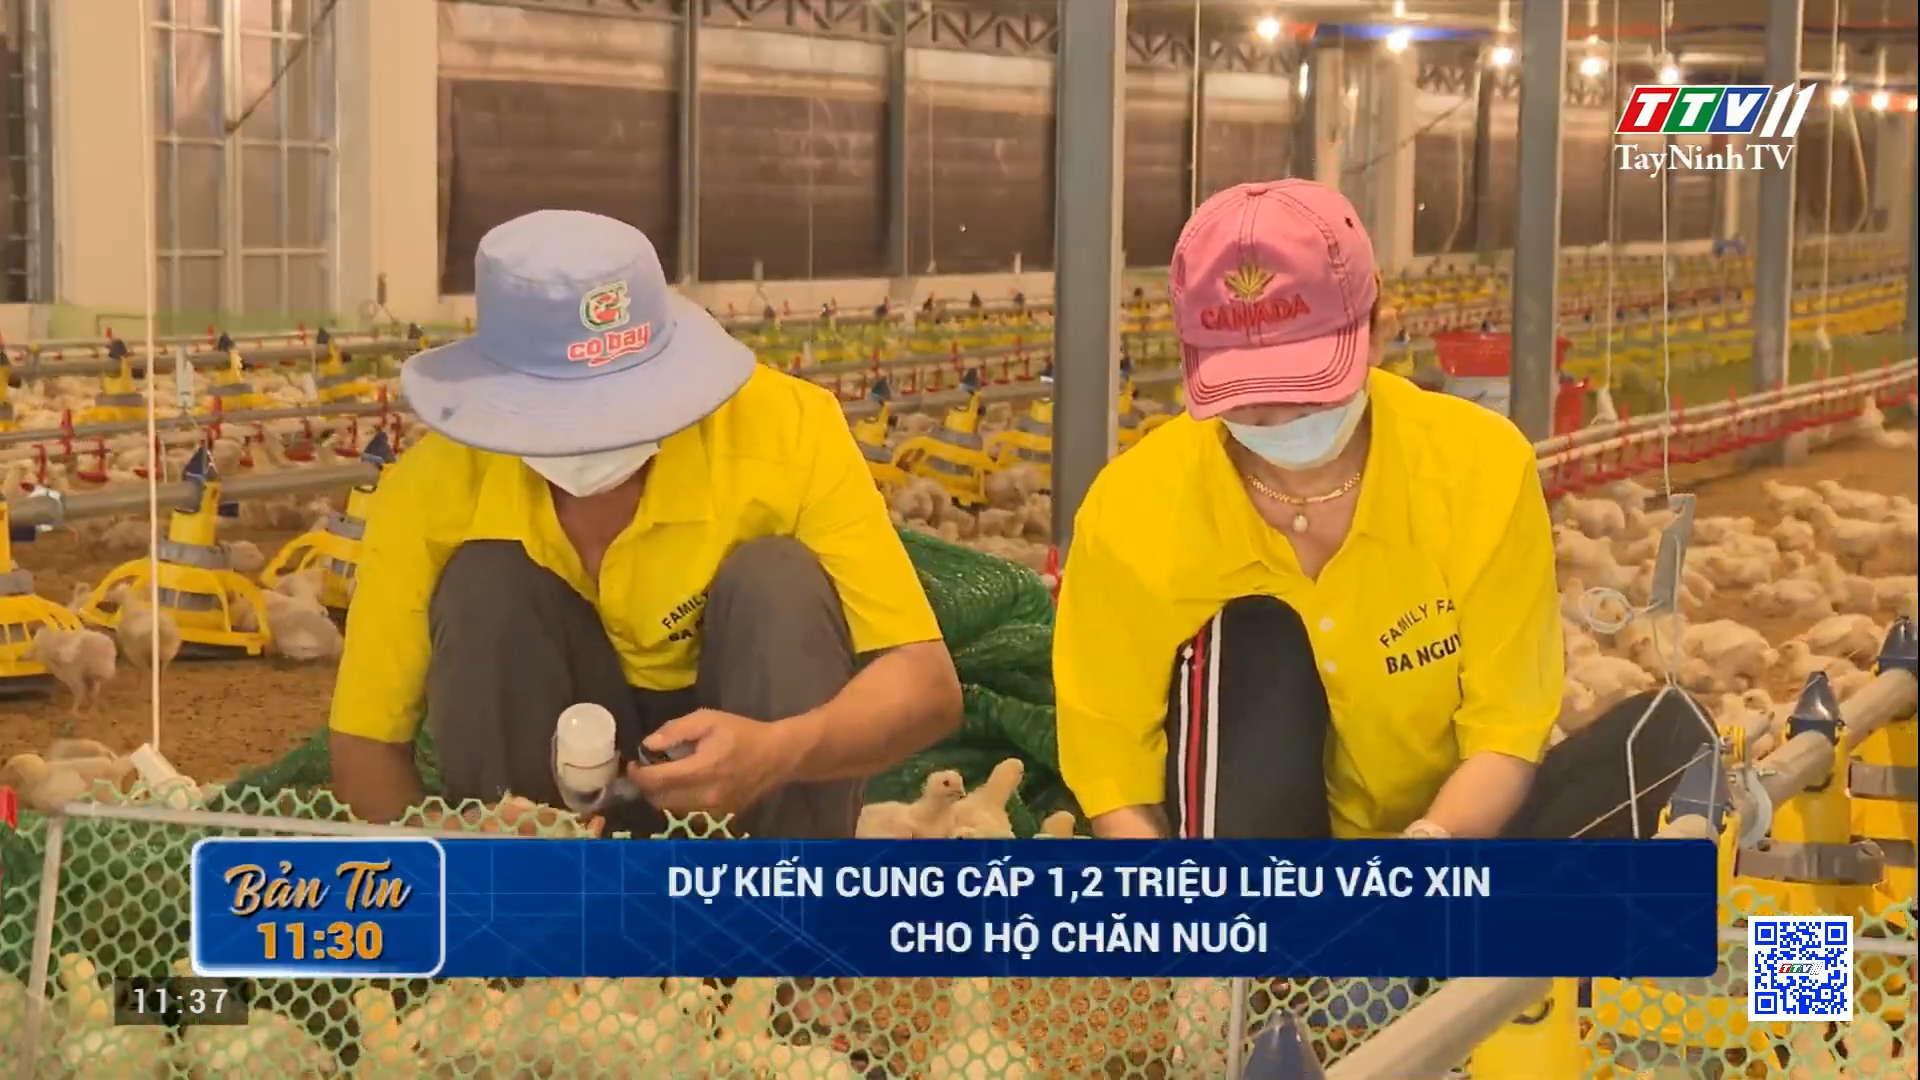 Dự kiến cung cấp 1,2 triệu liều vắc xin cho hộ chăn nuôi | TayNinhTV